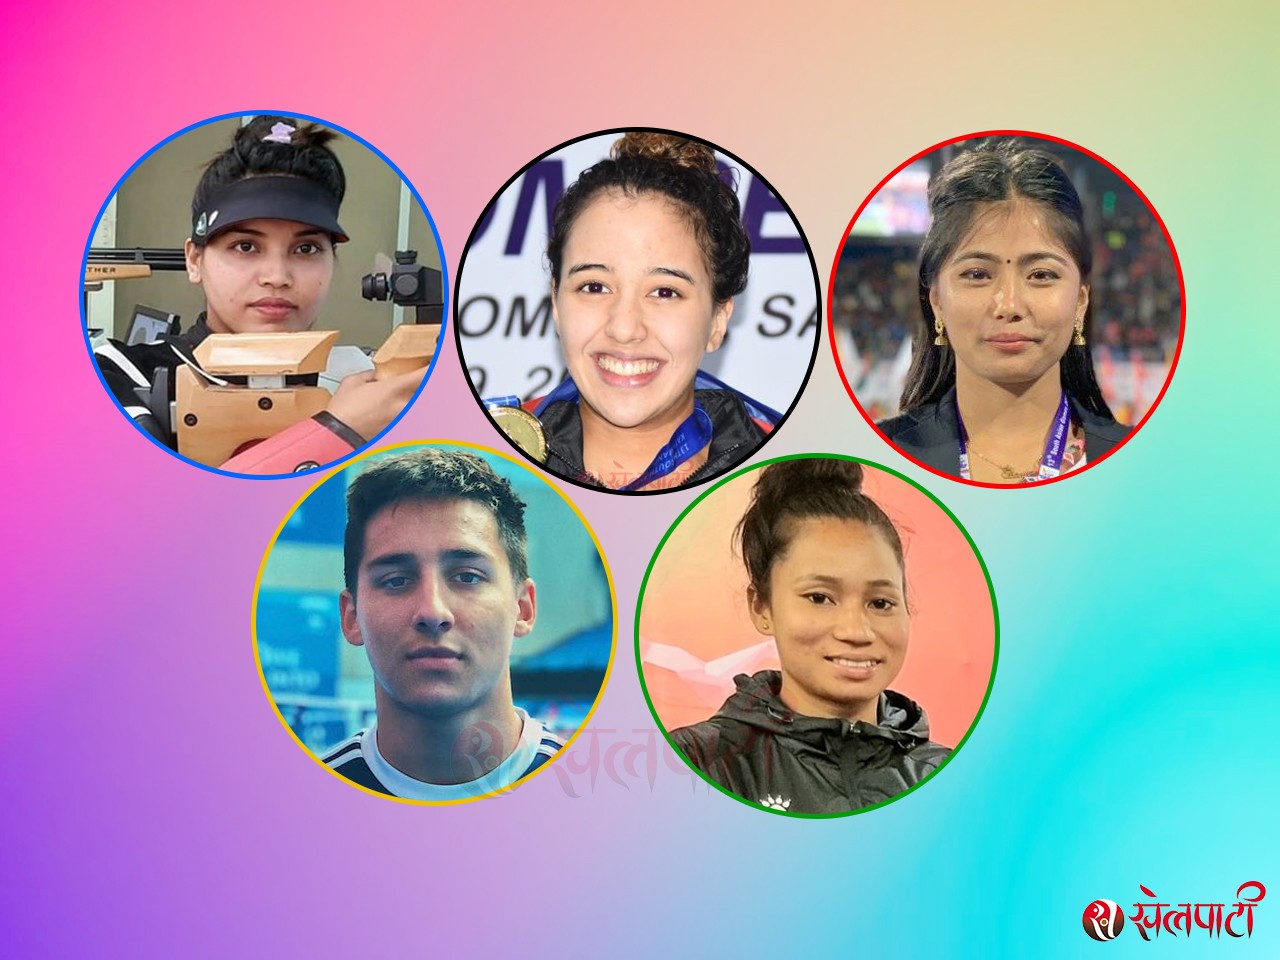 टोकियो ओलम्पिकमा नेपाल : सहभागितामै सिमित